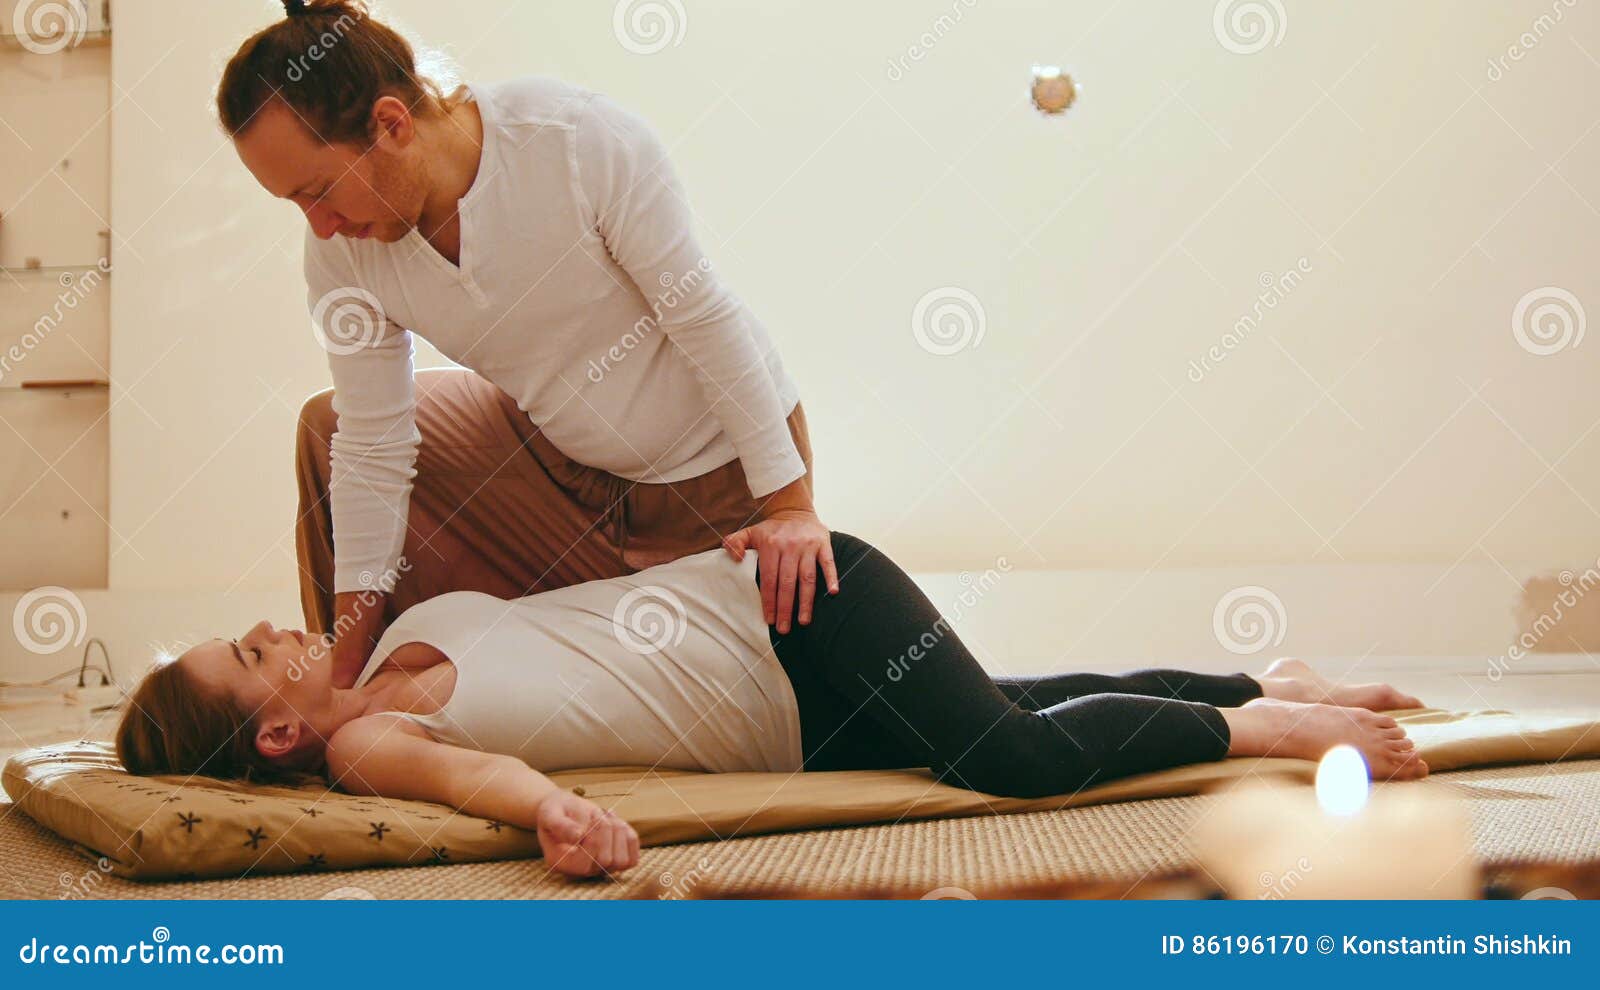 Massage seduce with 